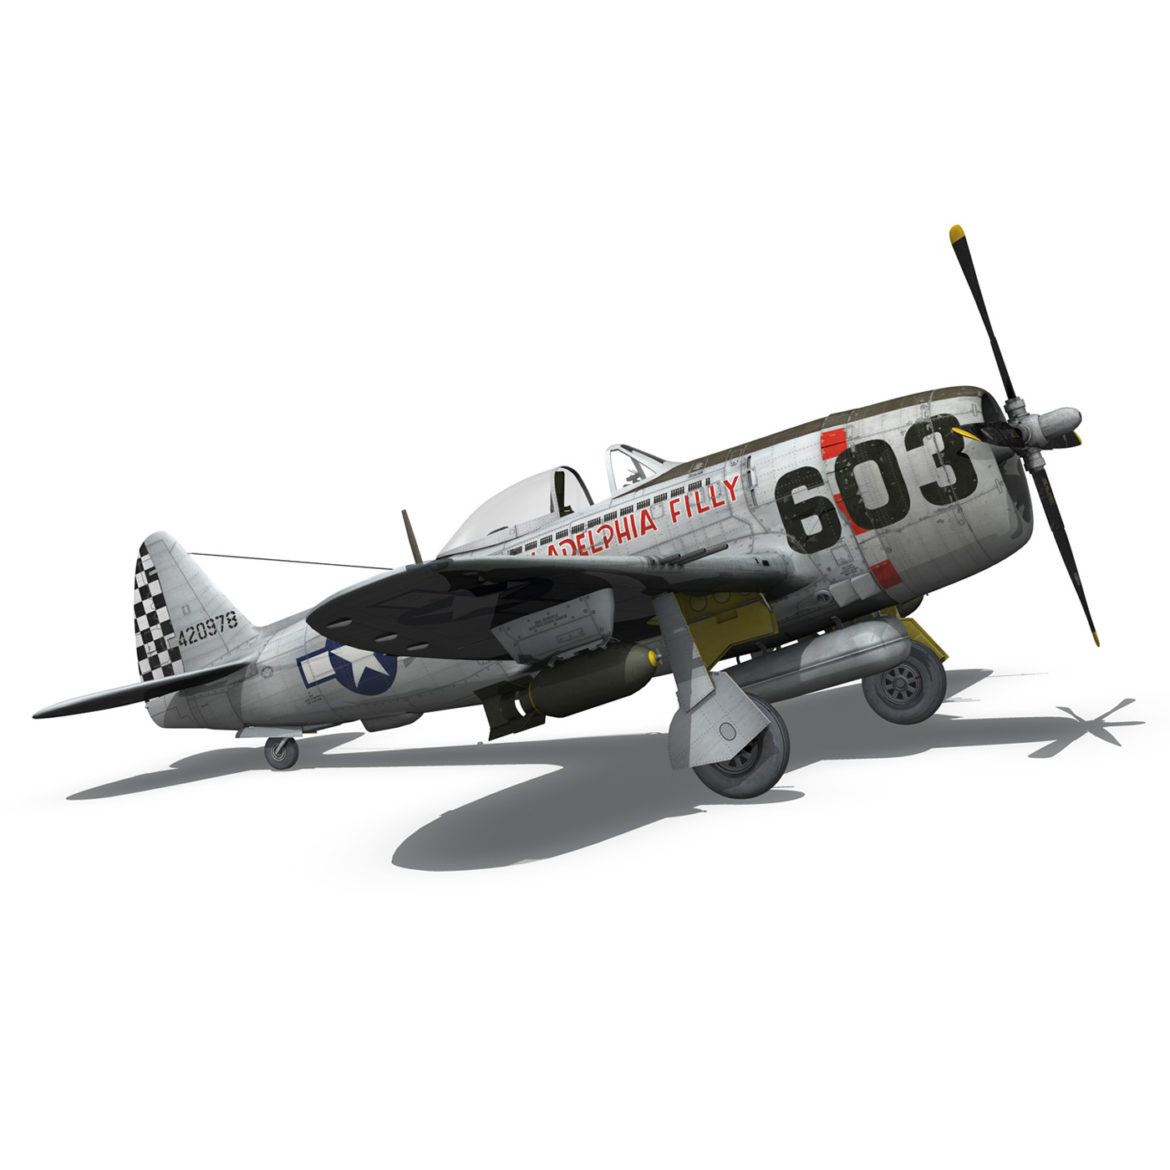 republic p-47d thunderbolt – torrid tessie 3d model 3ds c4d lwo lw lws obj fbx 303875